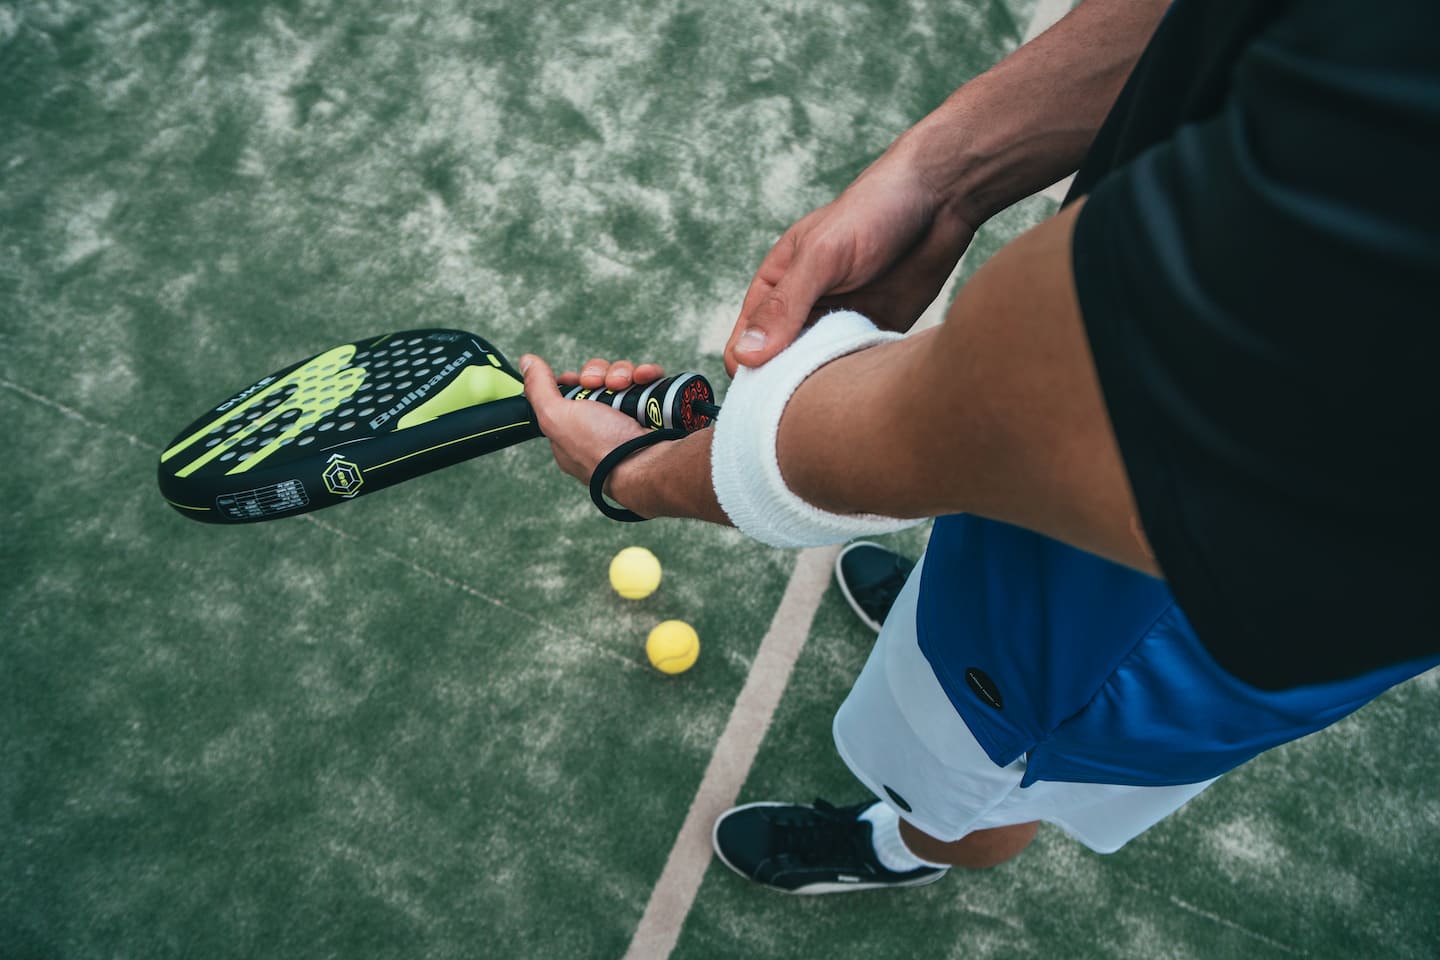 Mann hält Tennisschläger, Bälle liegen auf dem Boden